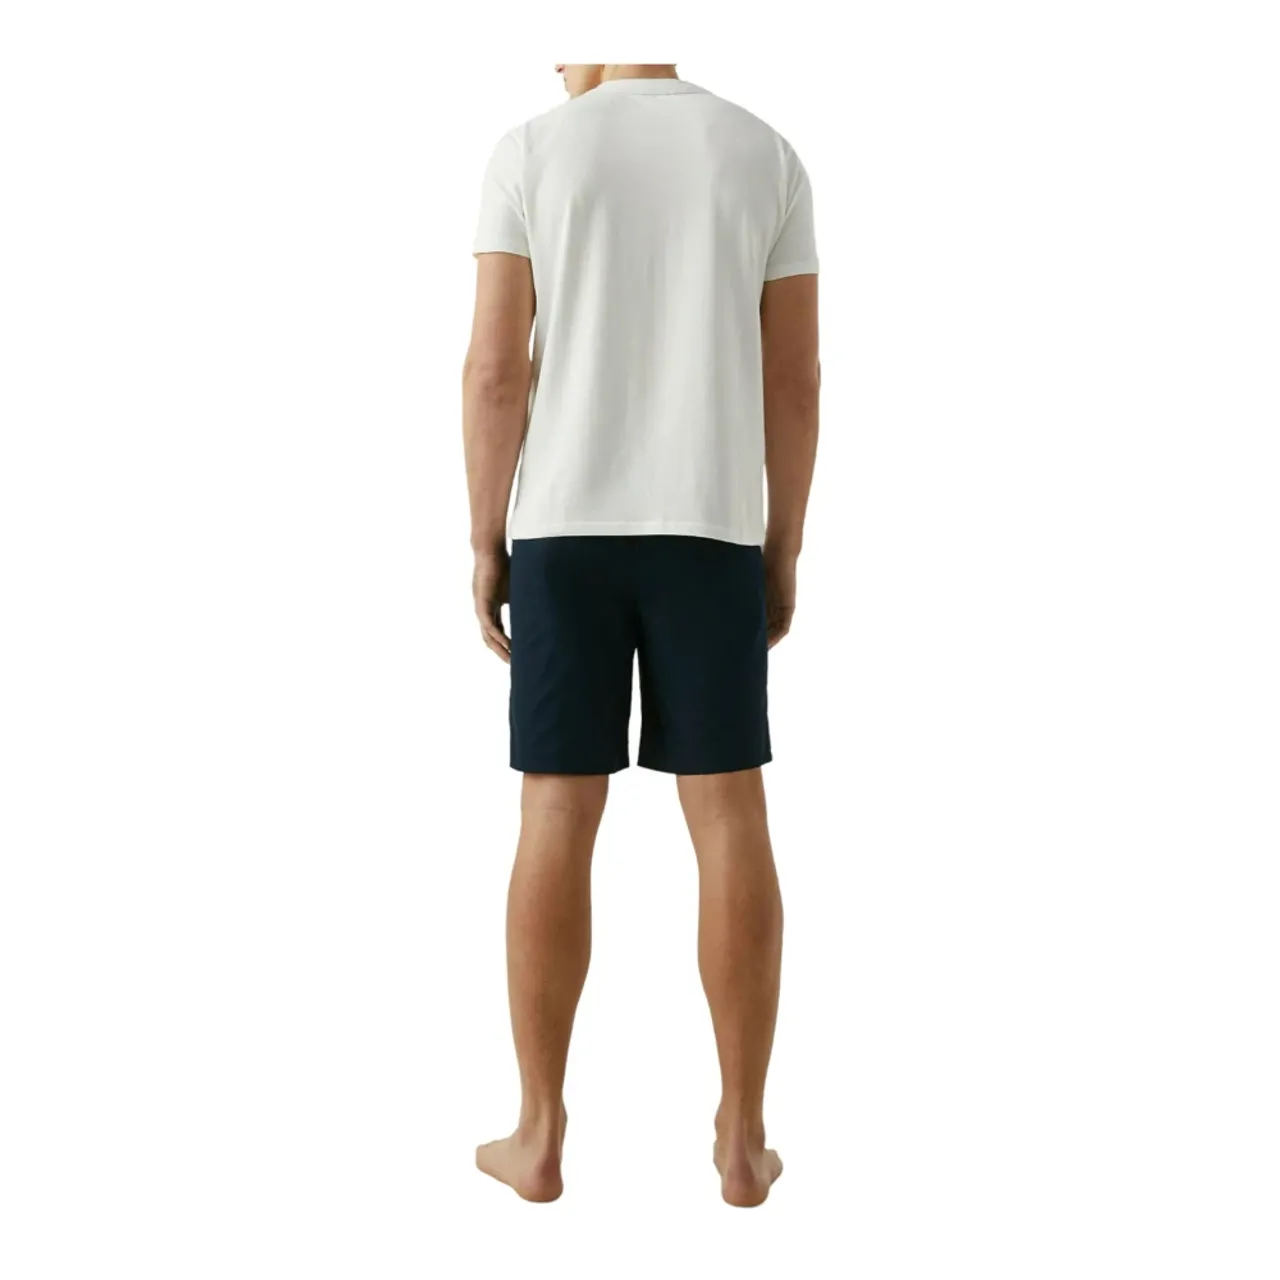 Der elastische Bund der Shorts erinnert an das ikonische Detail, das das T-Shirt schmückt und einen koordinierten Lounge-Look mit makellosem Stil scha